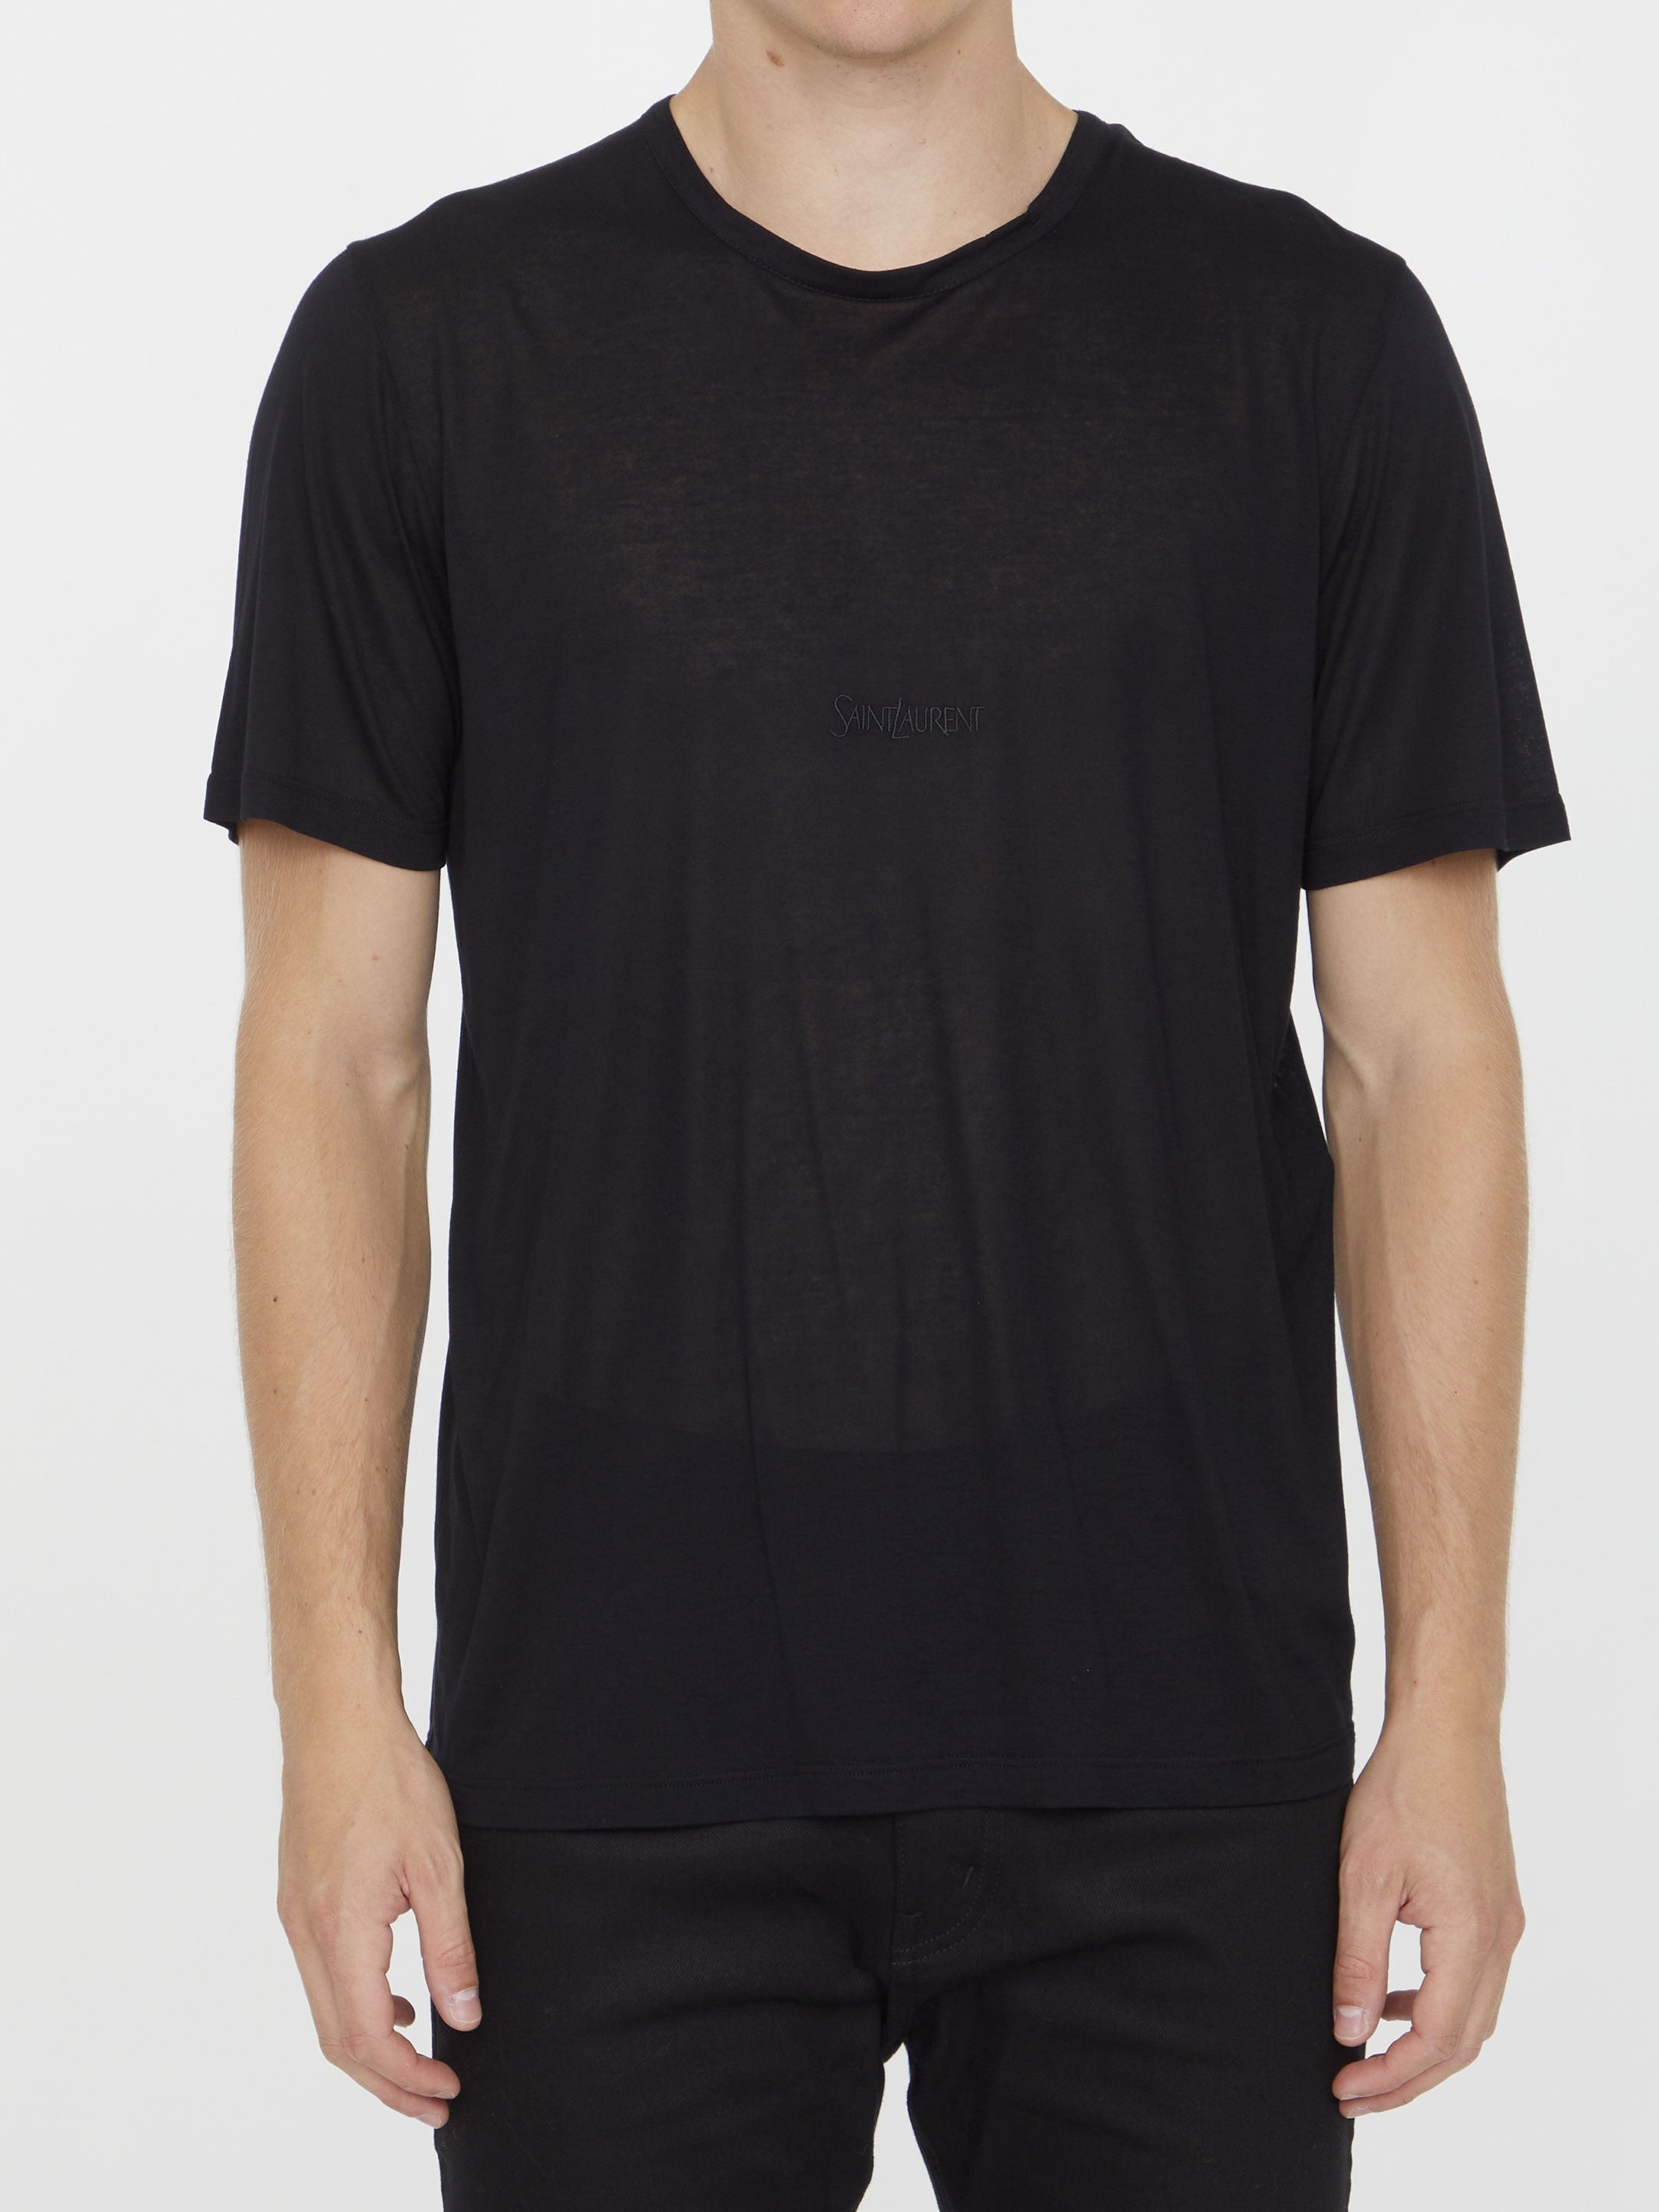 SAINT-LAURENT-OUTLET-SALE-Black-t-shirt-with-logo-Shirts-L-BLACK-ARCHIVE-COLLECTION.jpg